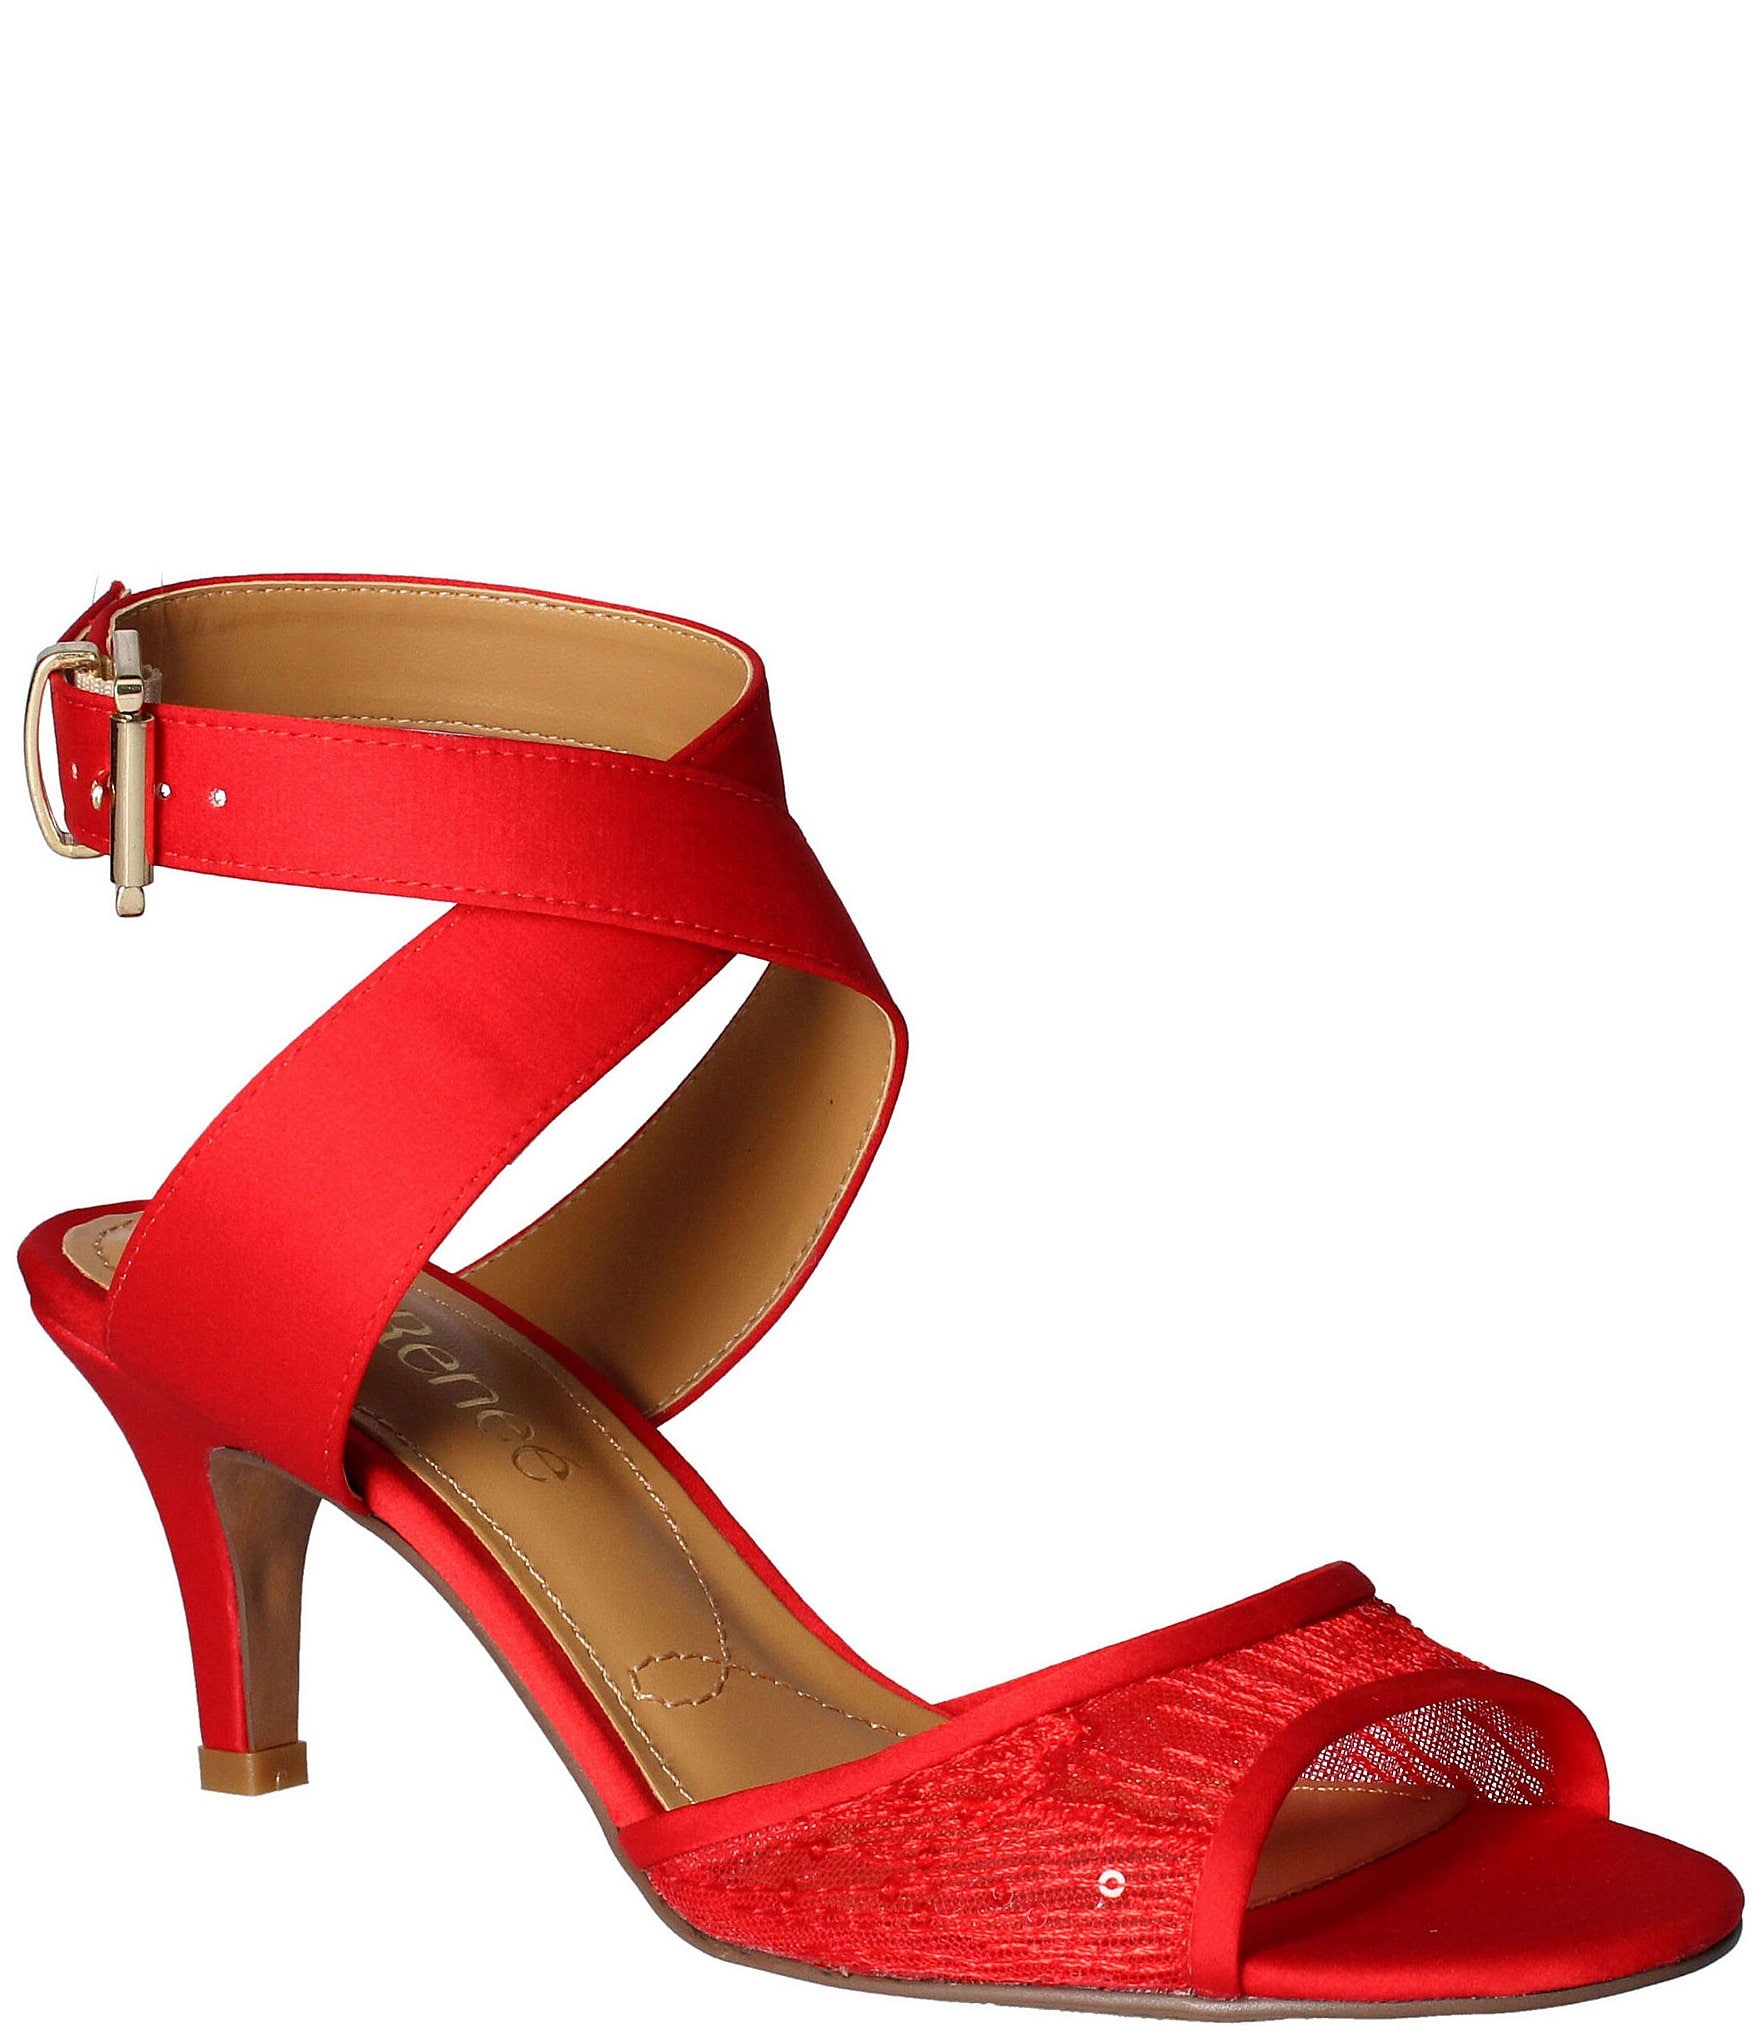 Shop Women's Red Shoes - Steve Madden Australia